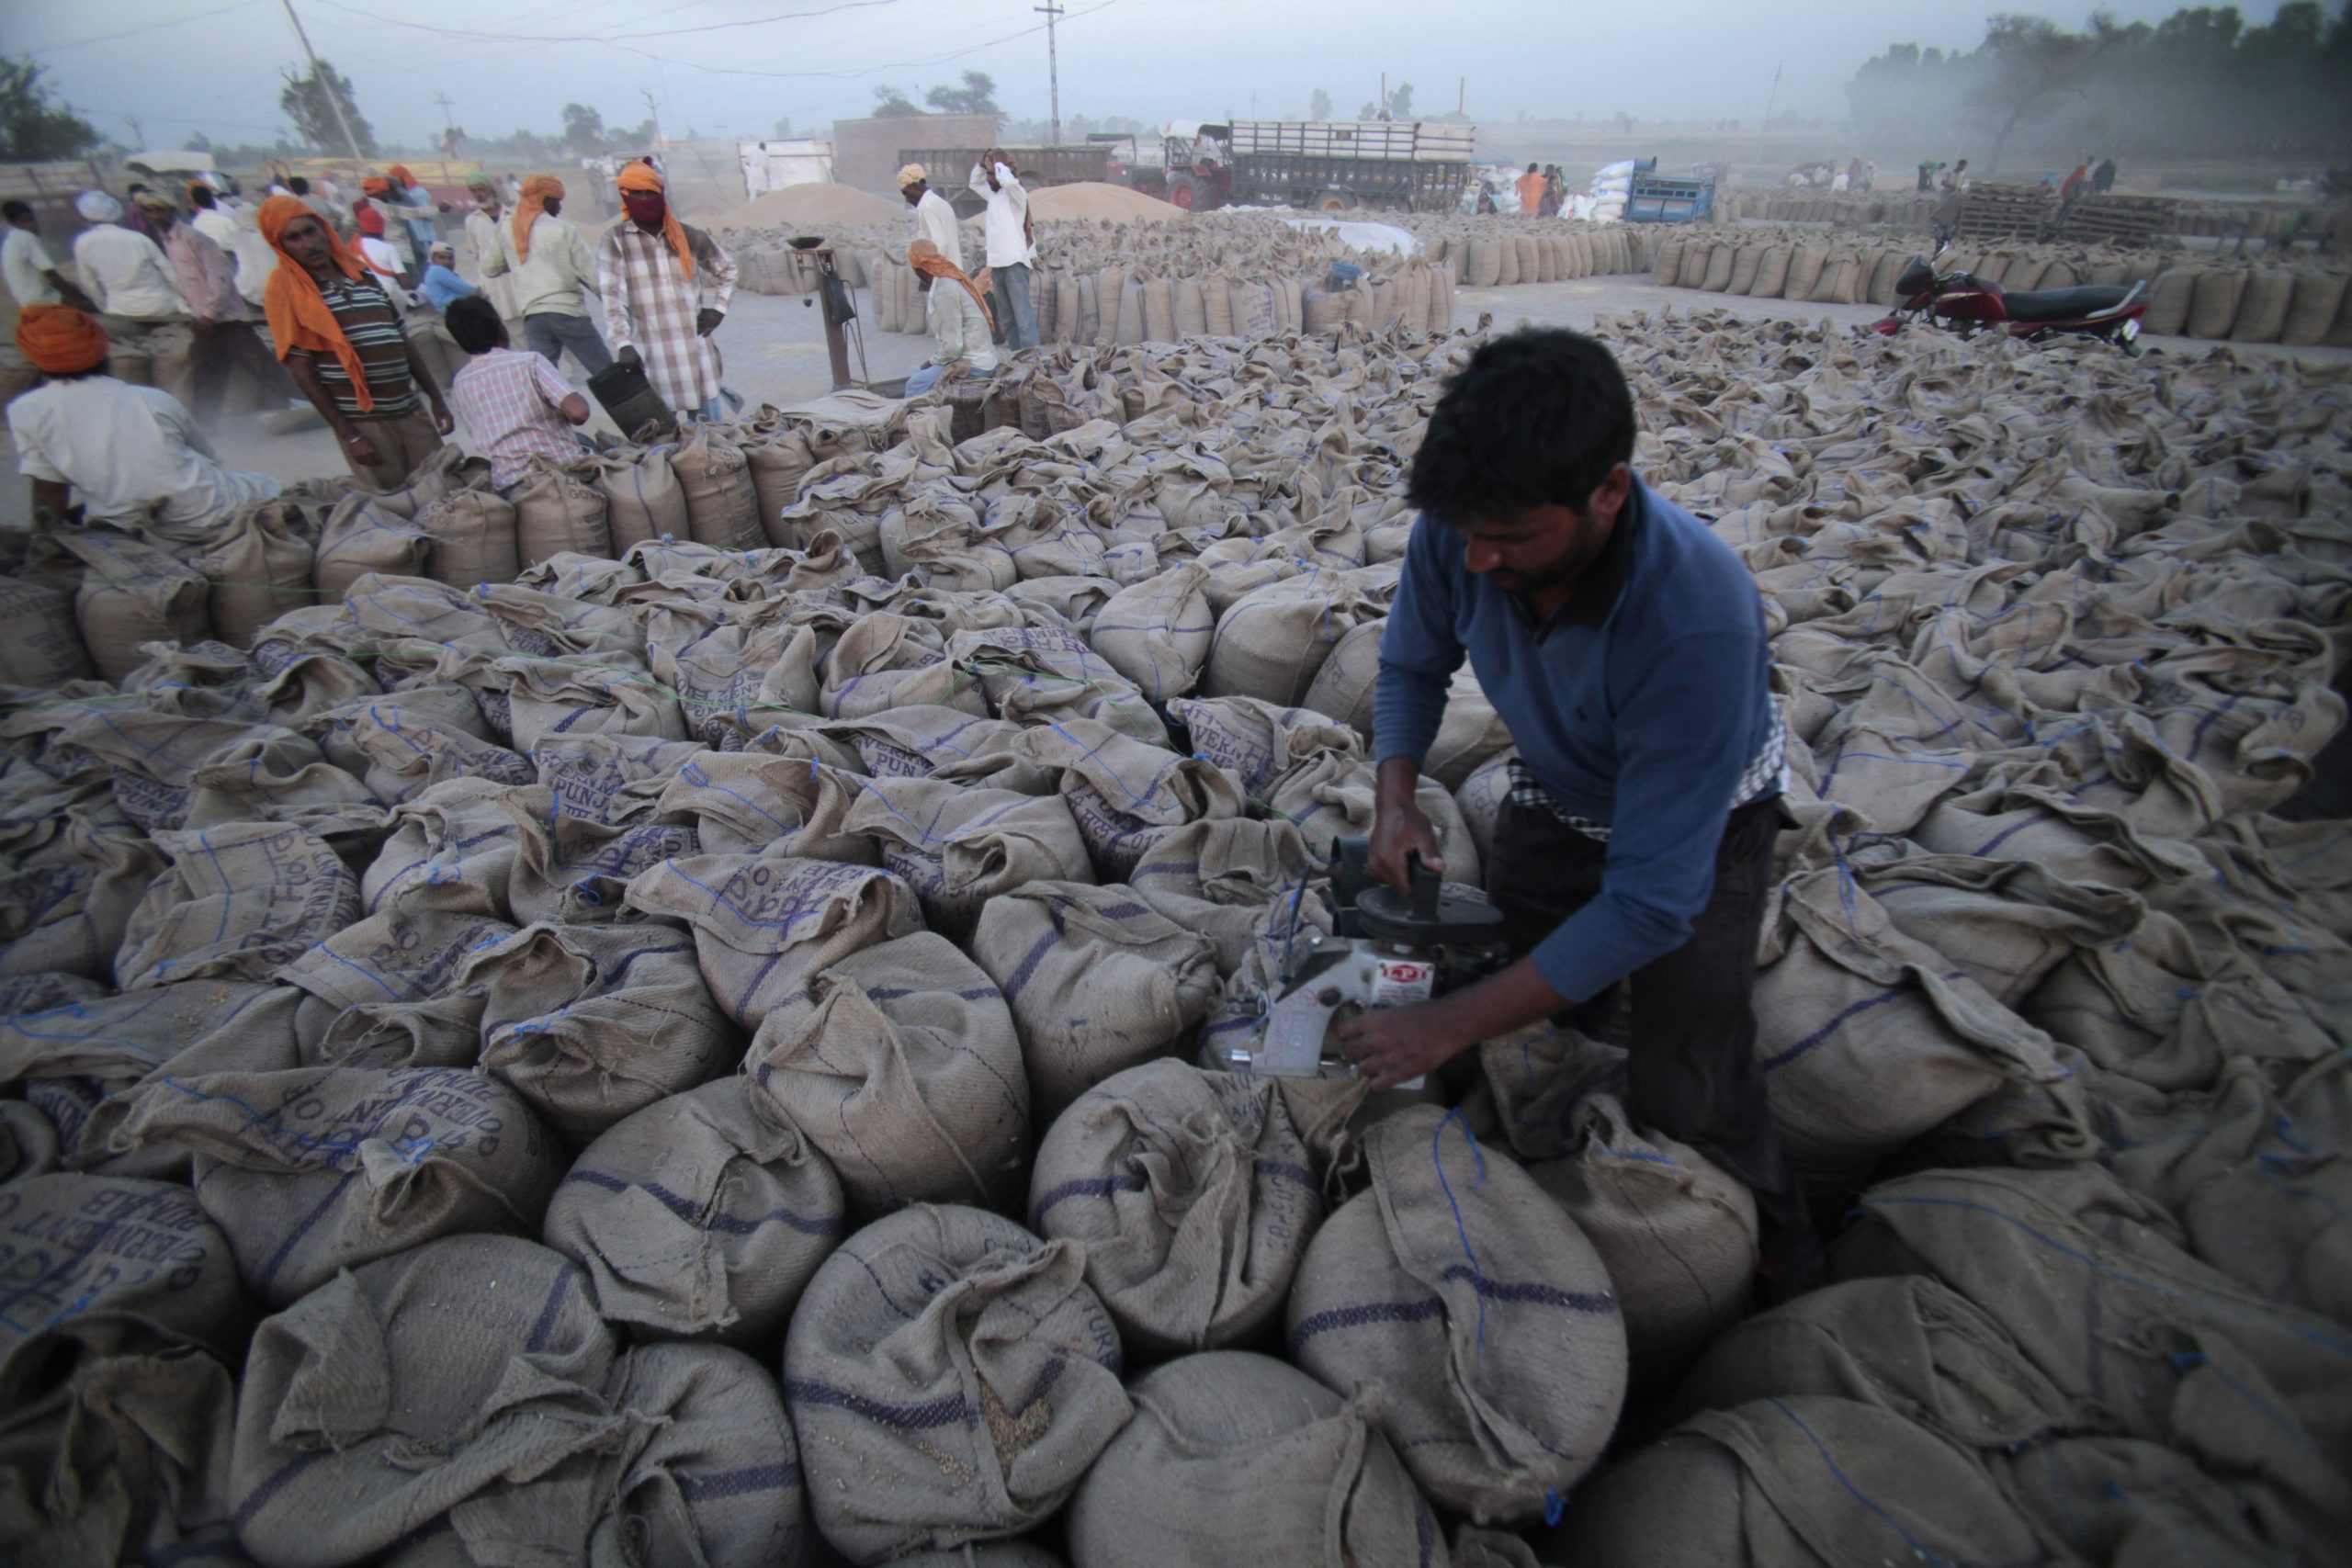 雪上加霜 印度宣布禁止小麦出口且立即生效 